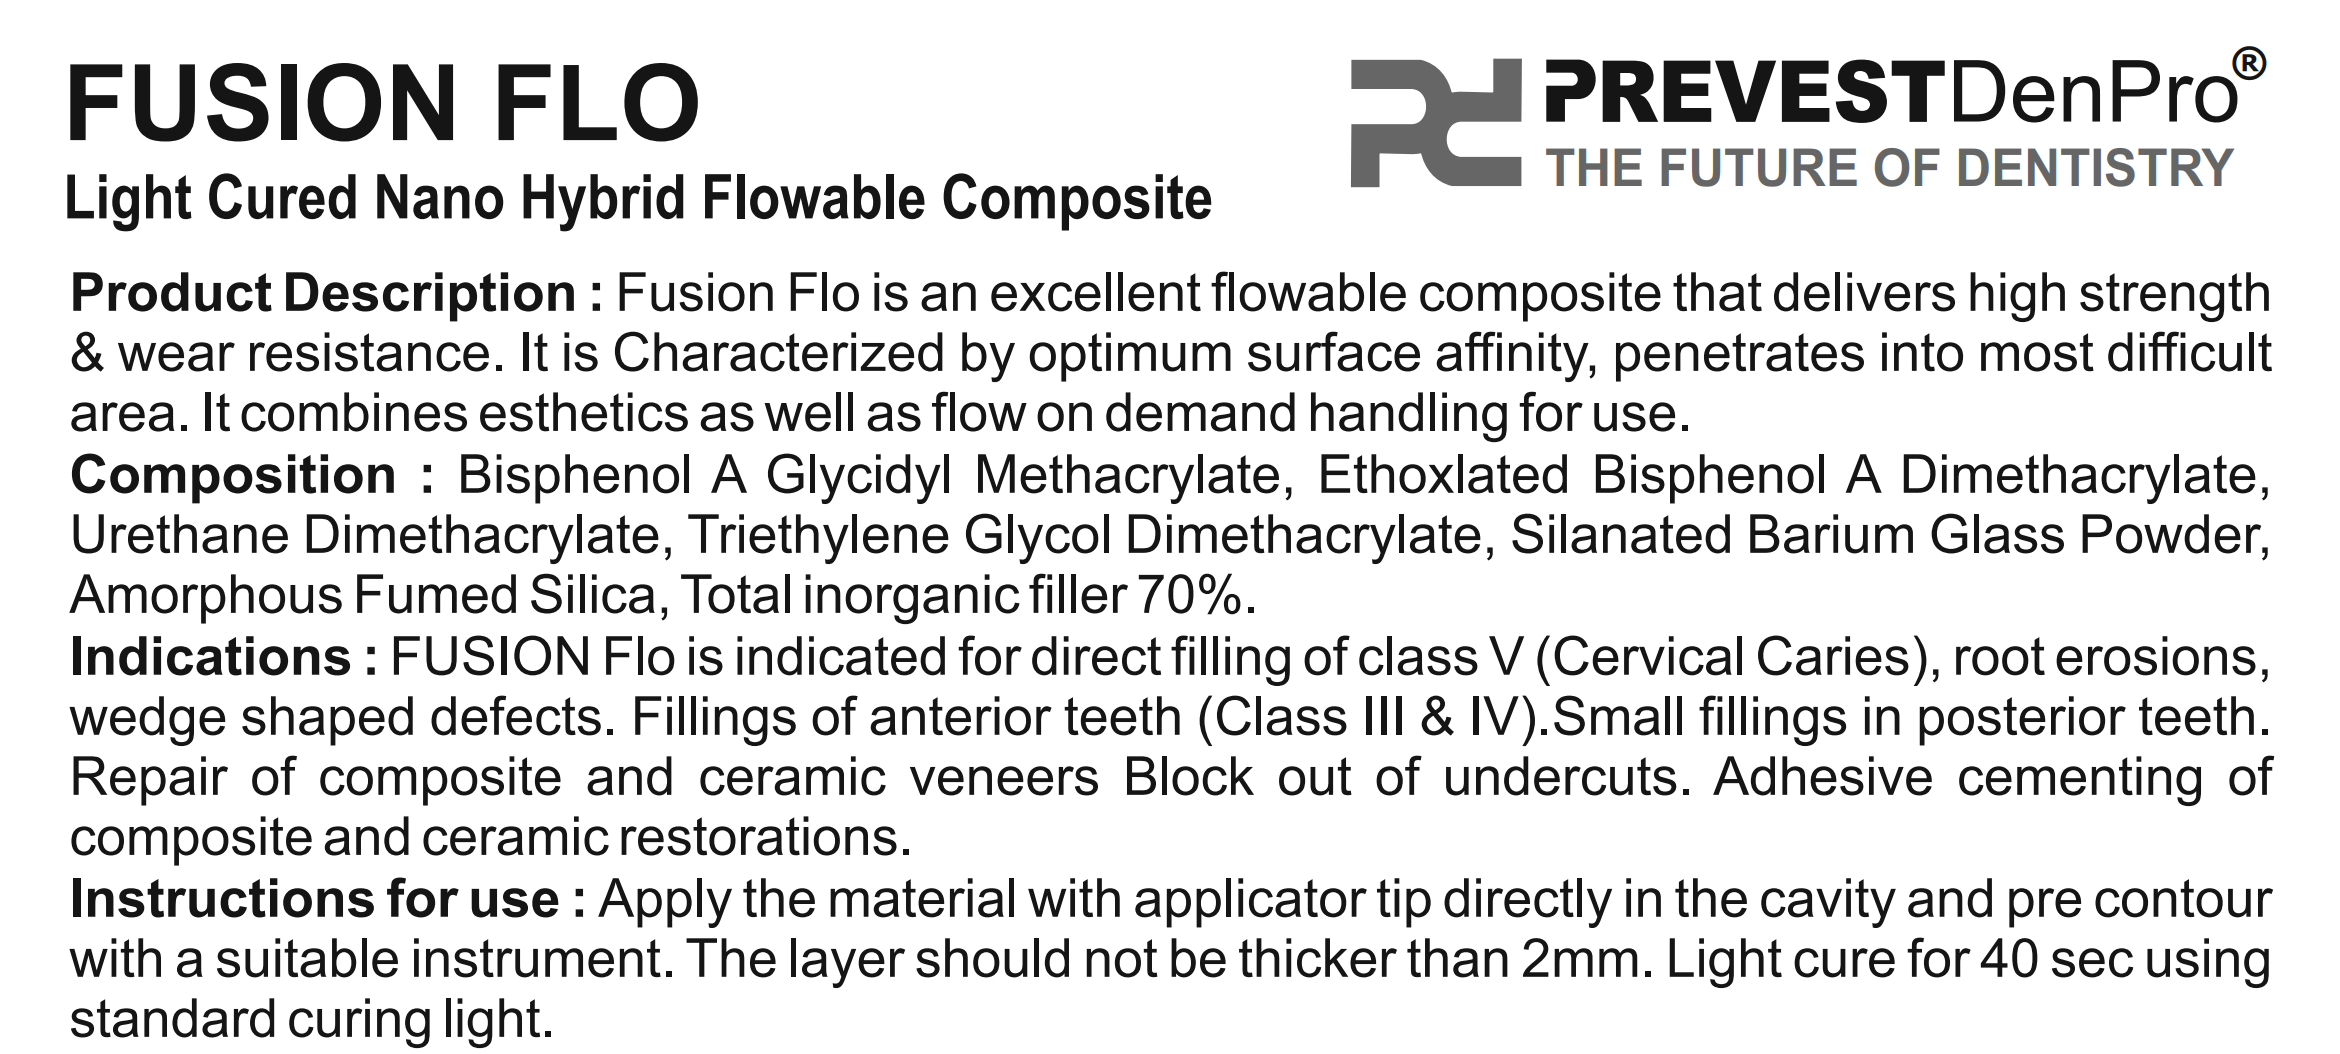 Fusion Flo Kit
(Light Curing Universal Nano Flowable Composite)